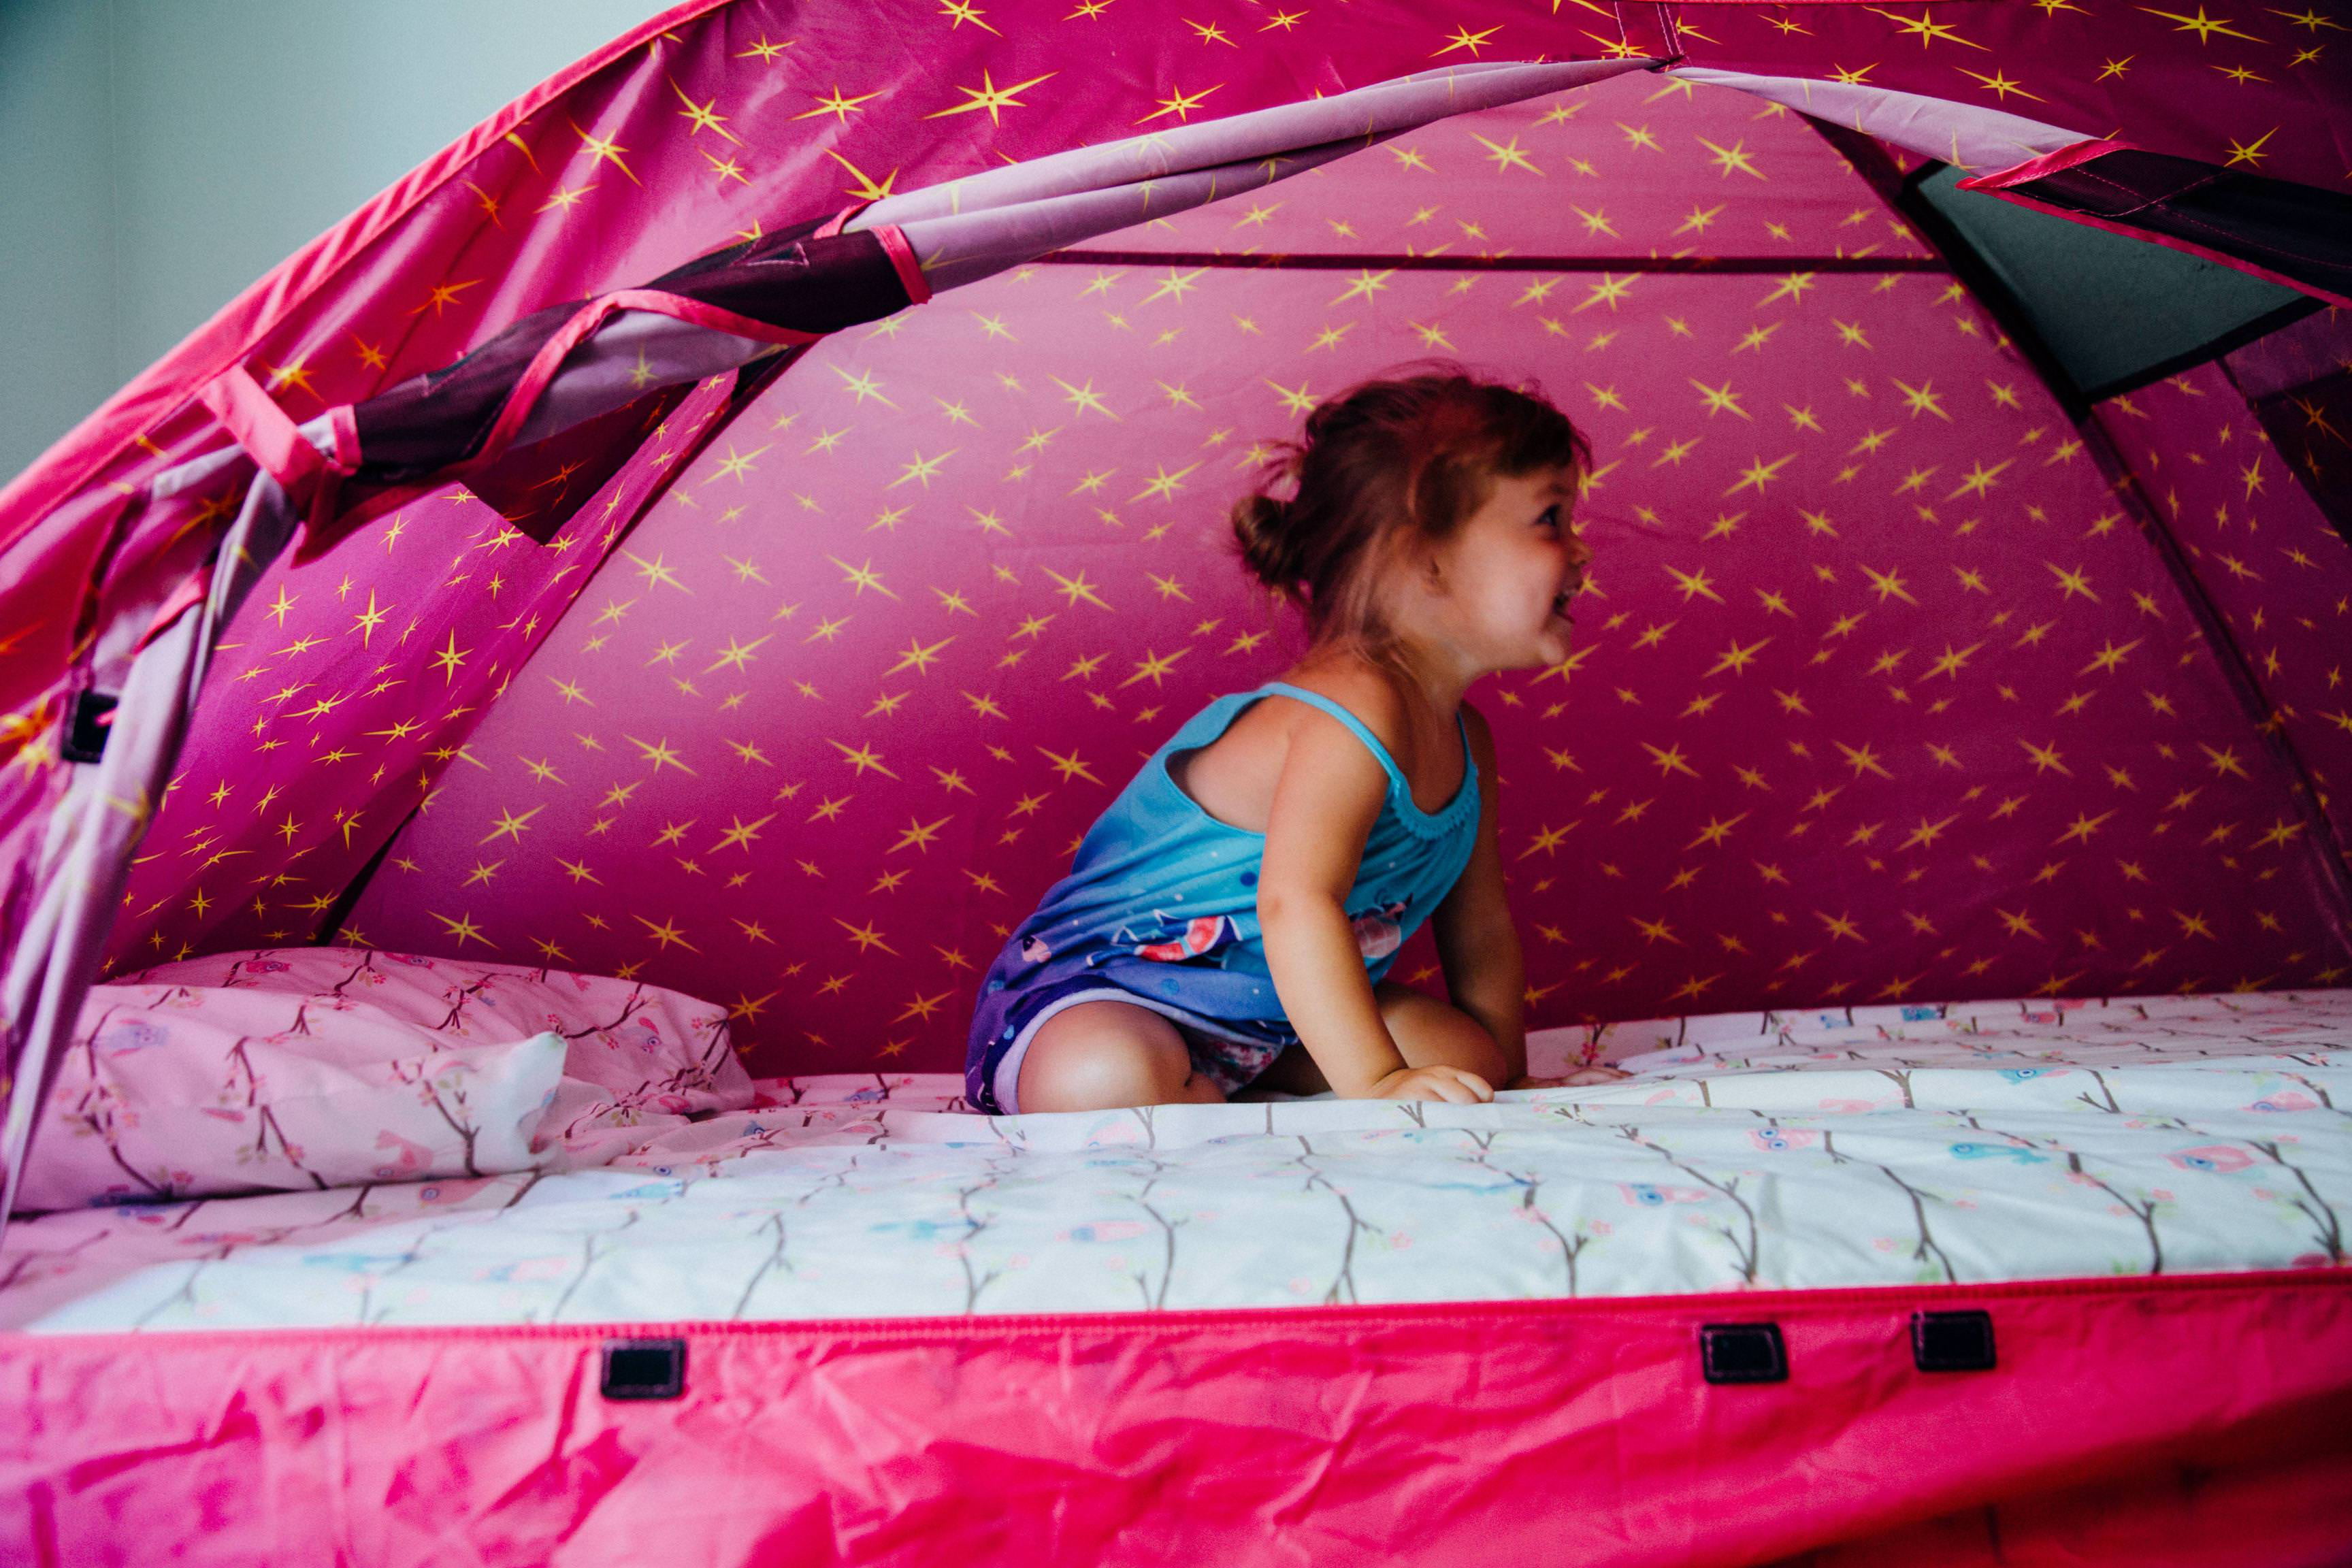 Pacific Play Tents 19721 Secret Castle Double Bed Tent for sale online 